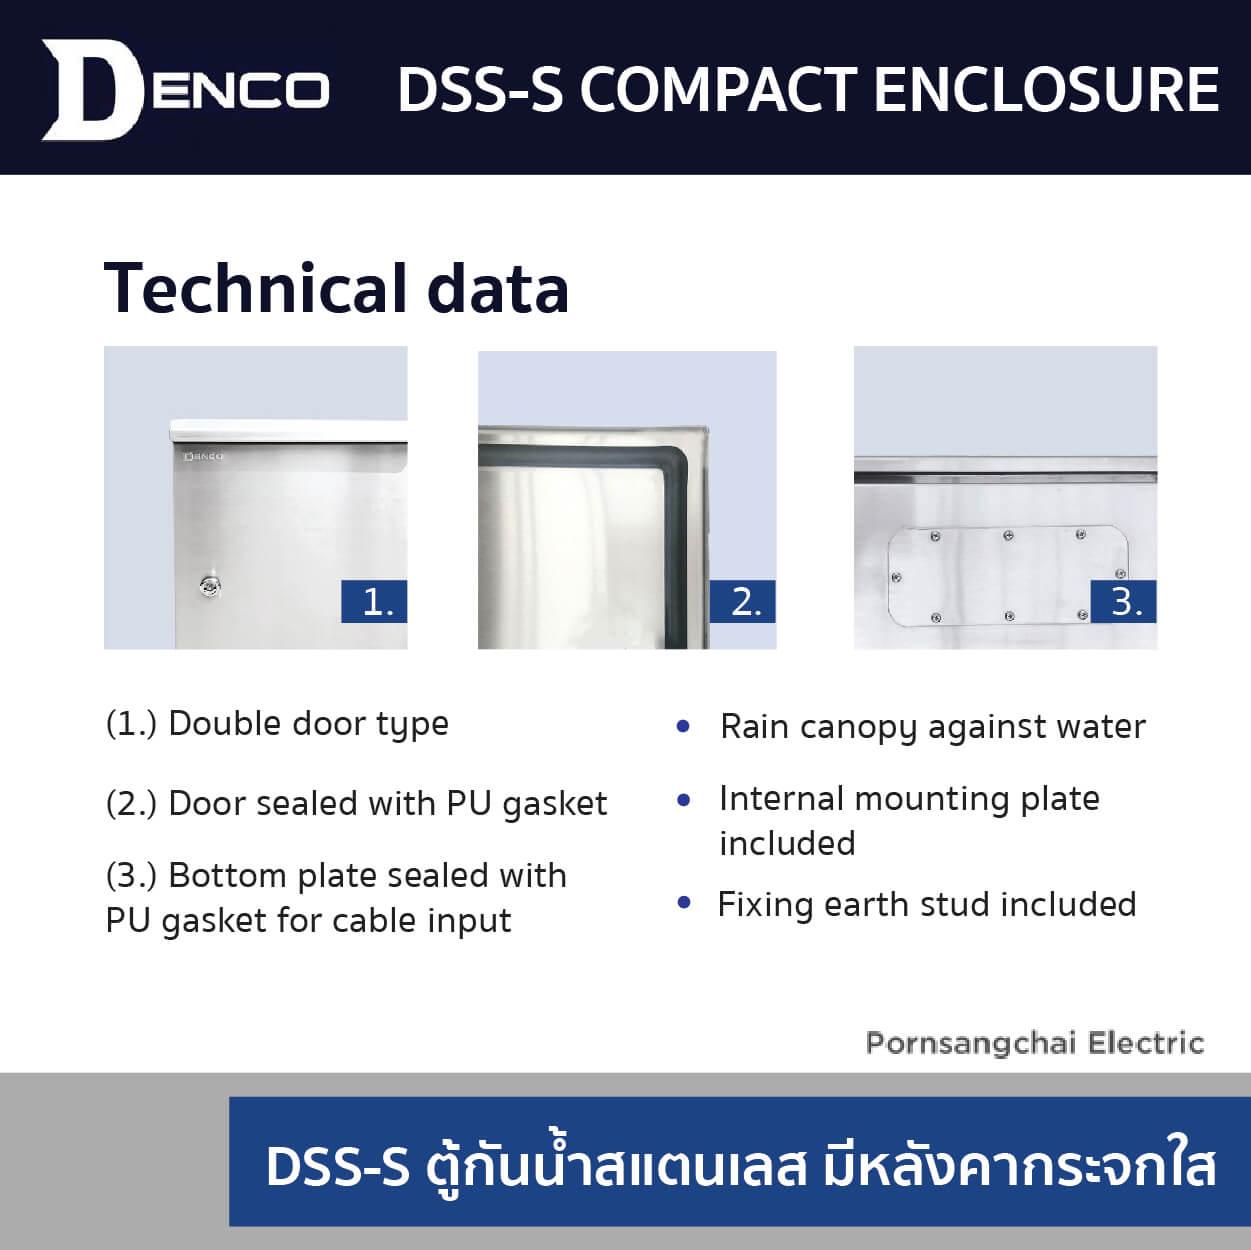 DSS-S Compact Enclosure